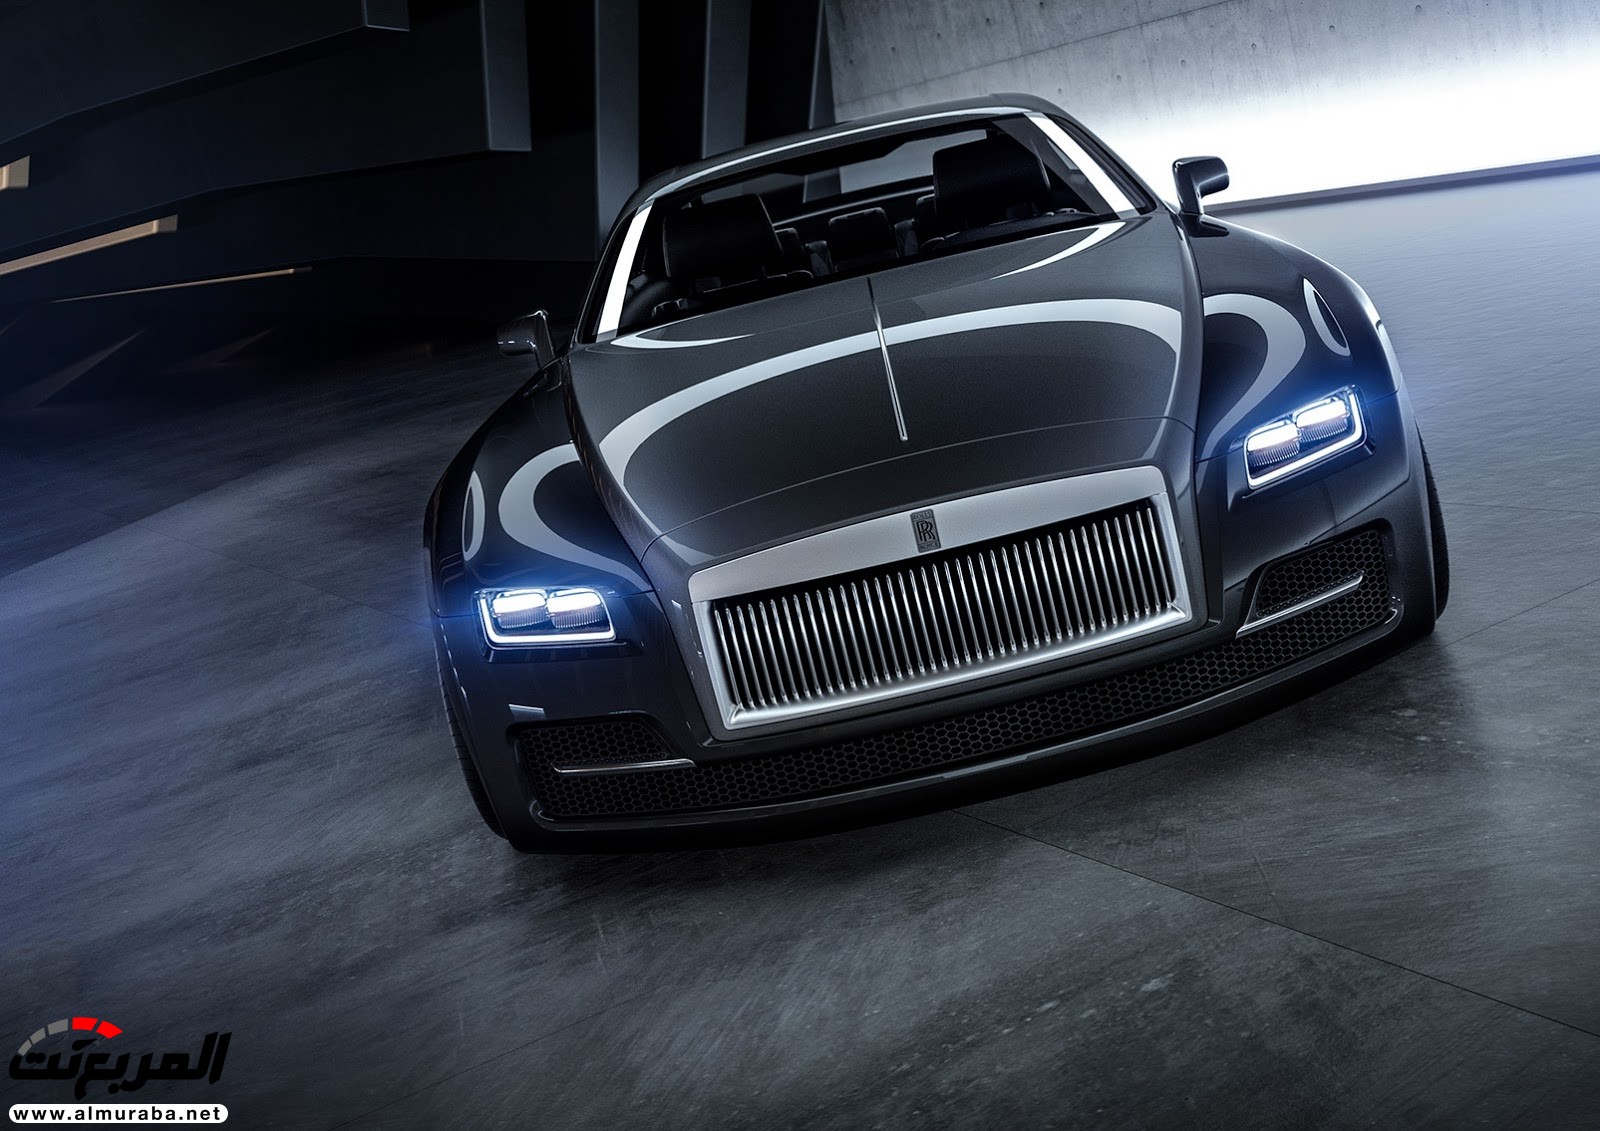 "صور افتراضية" لما يمكن أن تبدو عليه "رولز رويس" رايث كوبيه 2020 Rolls-Royce Wraith Coupe 61